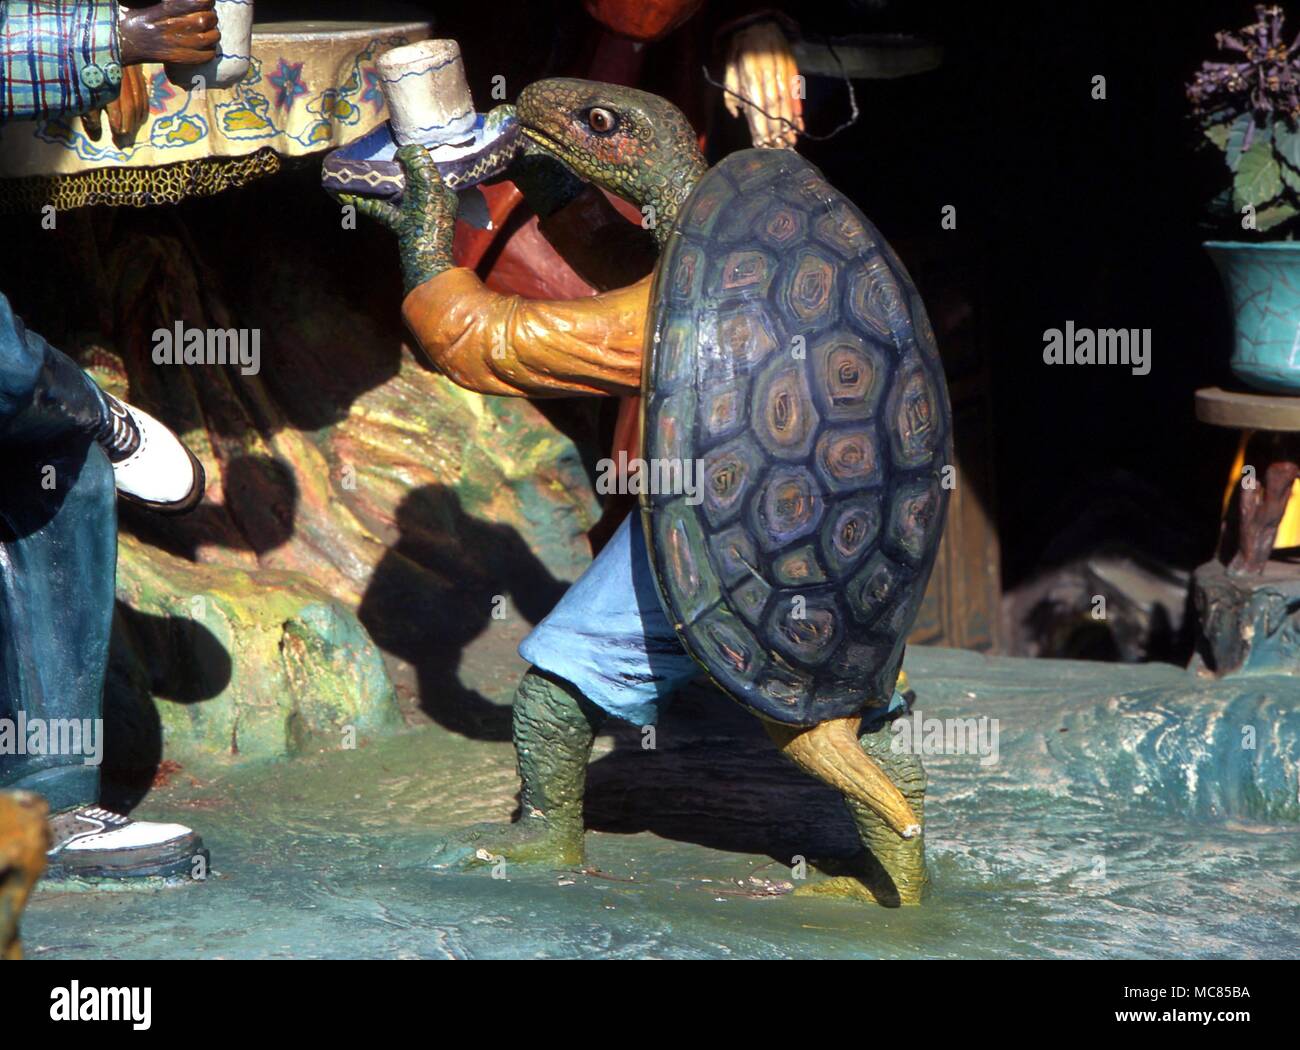 Animali - tartaruga - mitologico tartaruga, tra i cinesi soggetti mitologici in Haw Par Villa (Tiger Balm Park) di Singapore. Foto Stock